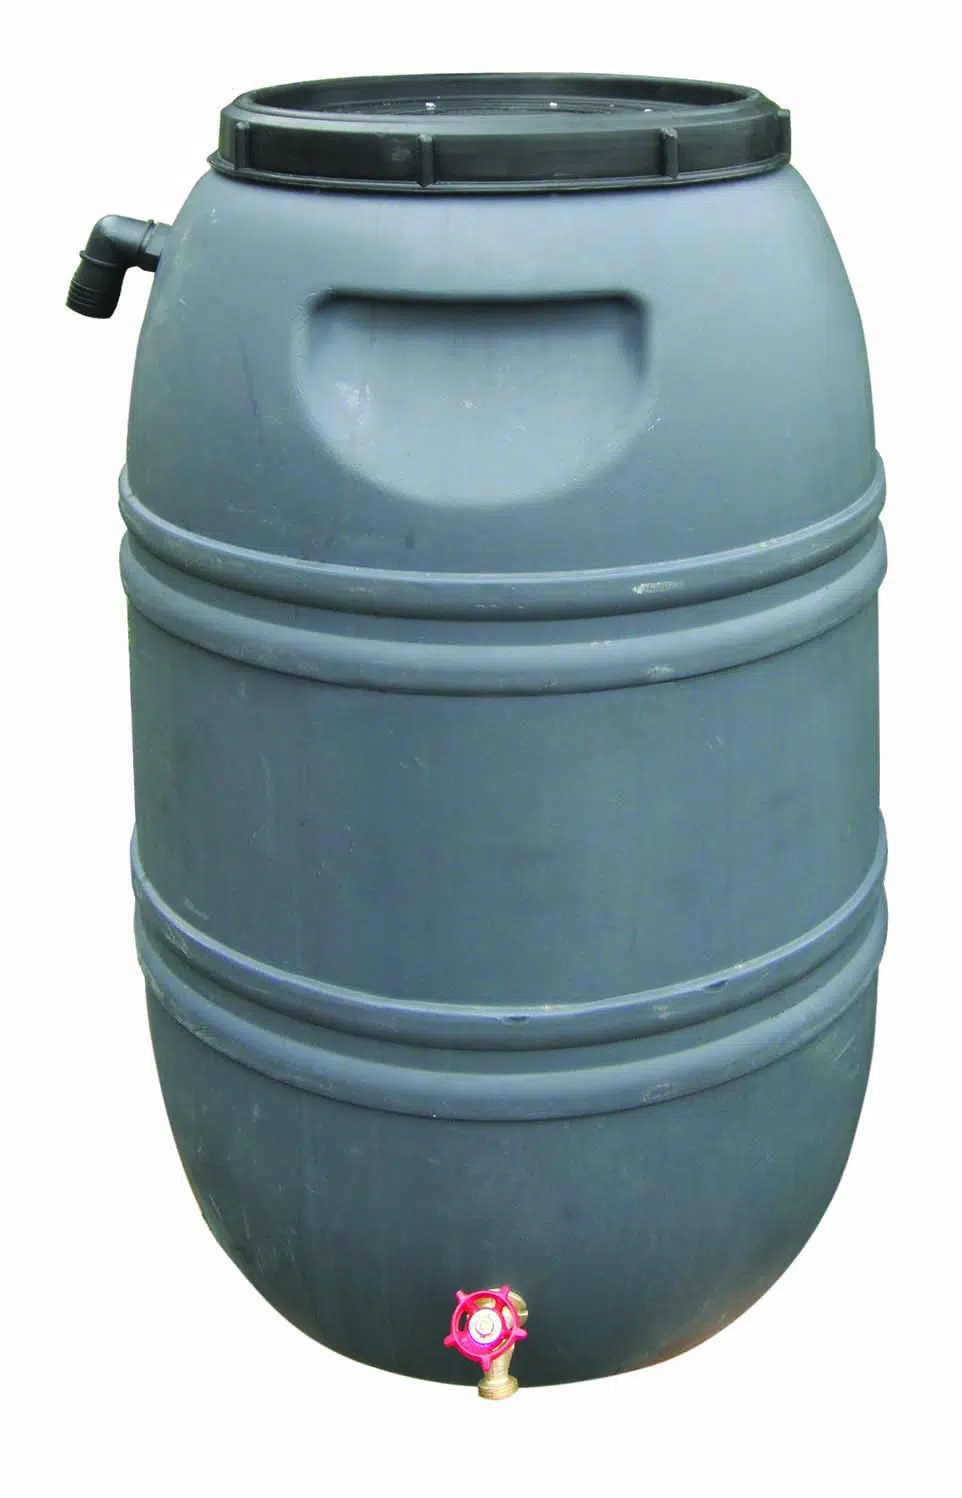 Baril collecteur d'eau avec dos plat, capcité de 50 gallons